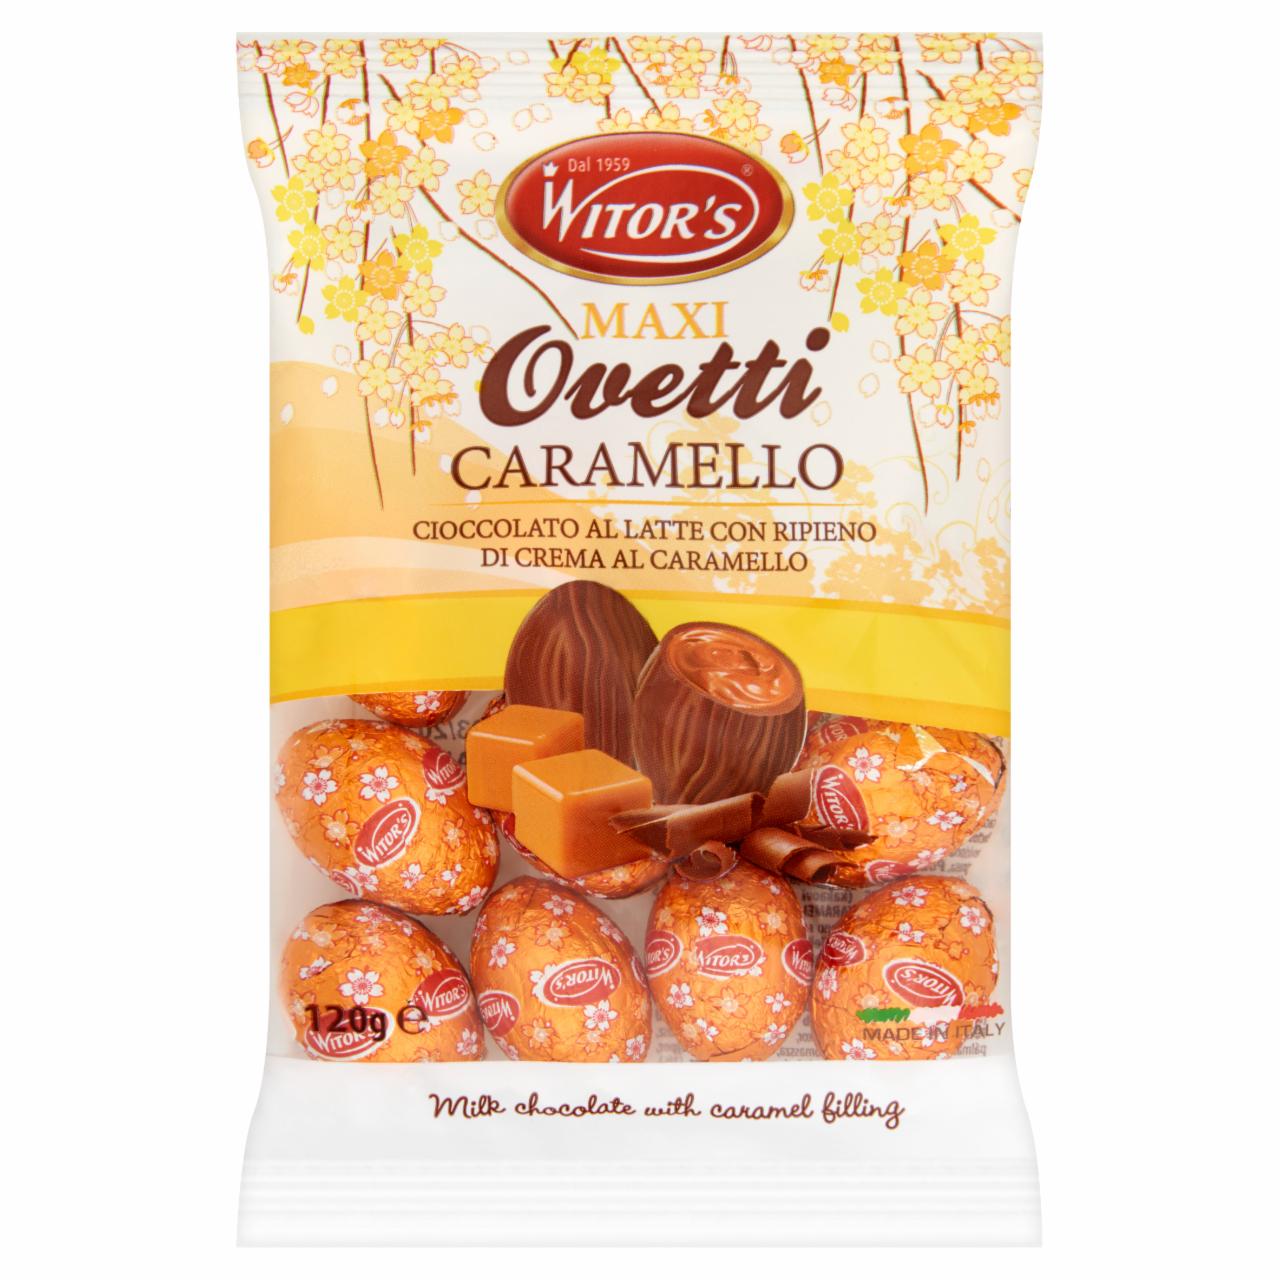 Képek - Witor's Ovetti tejcsokoládé tojás karamell ízű krémmel töltve 120 g